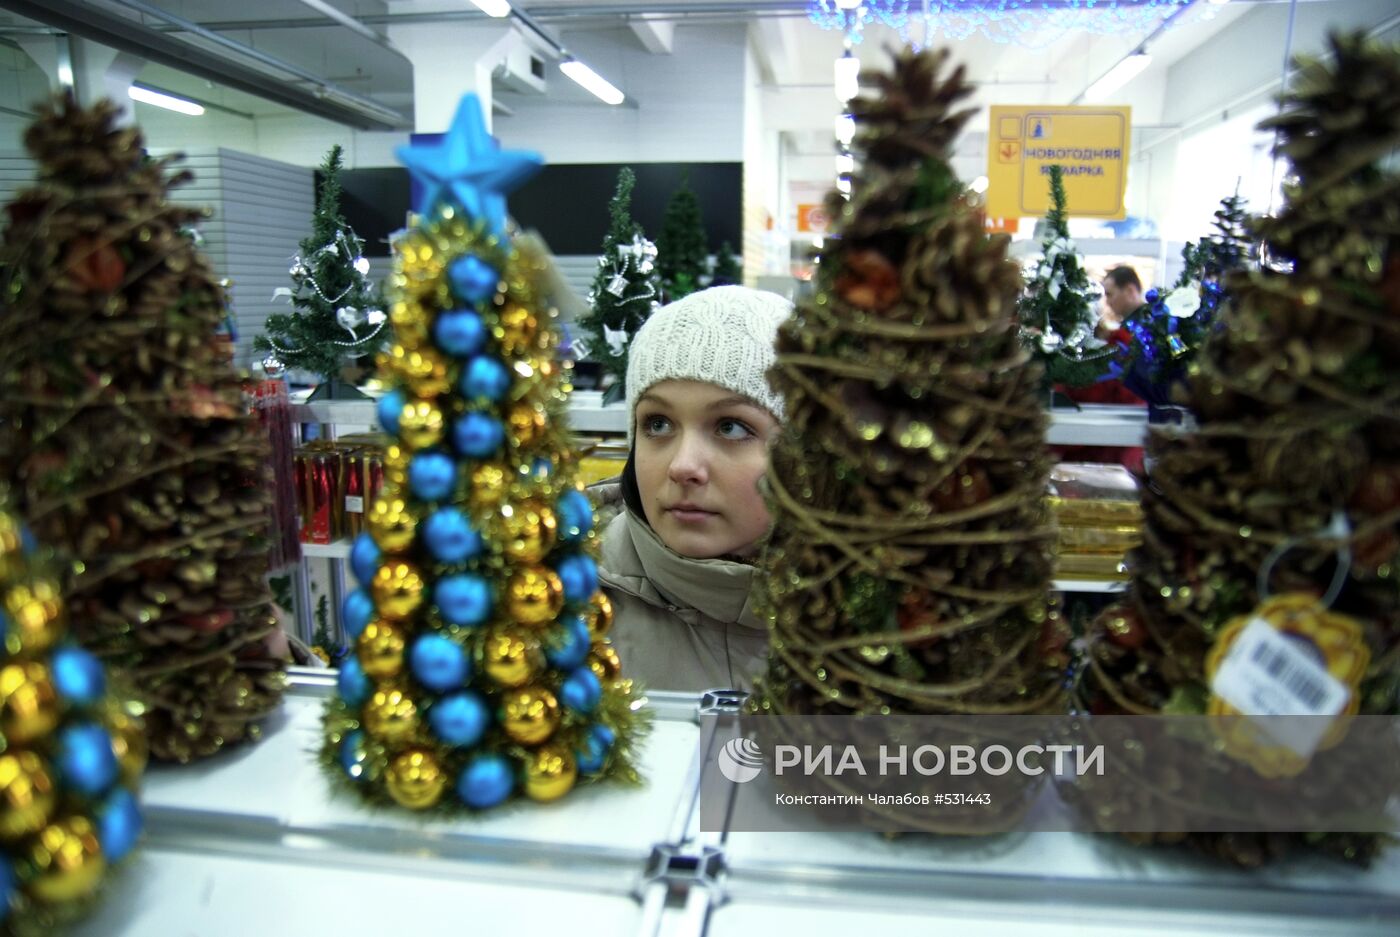 Продажа елочных игрушек в Великом Новгороде